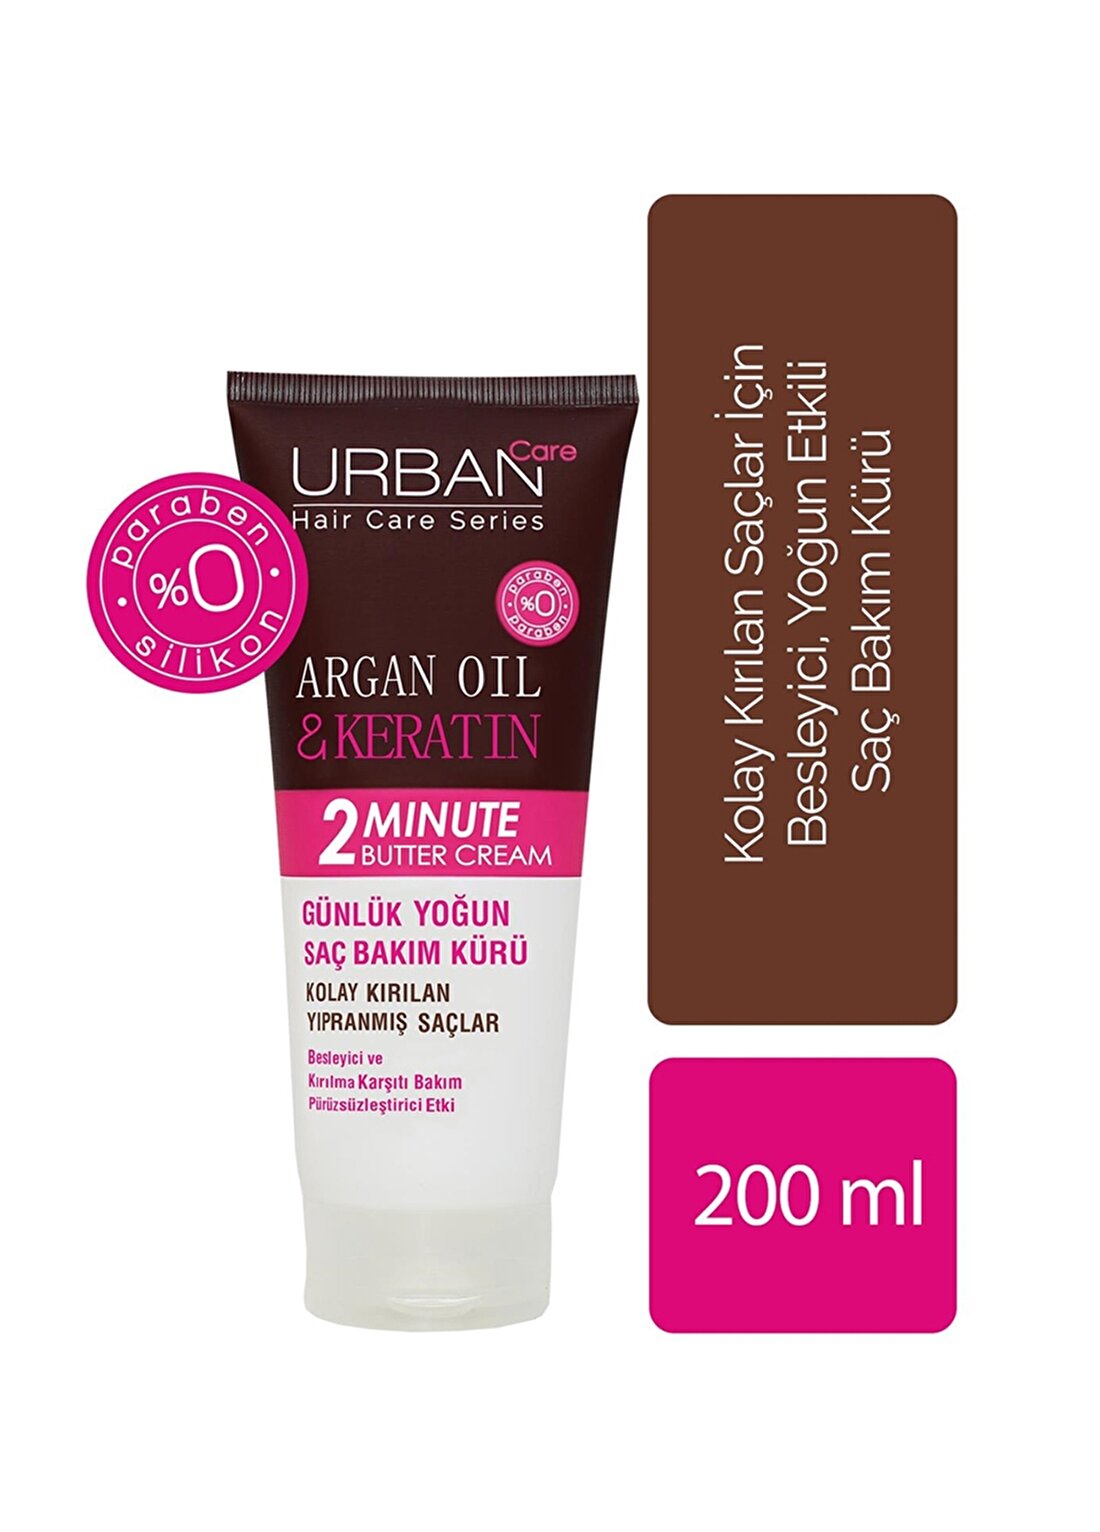 Urban Care Argan Oil & Keratin 2 Minutebutter Cream Yoğun Saç Bakım Kürü